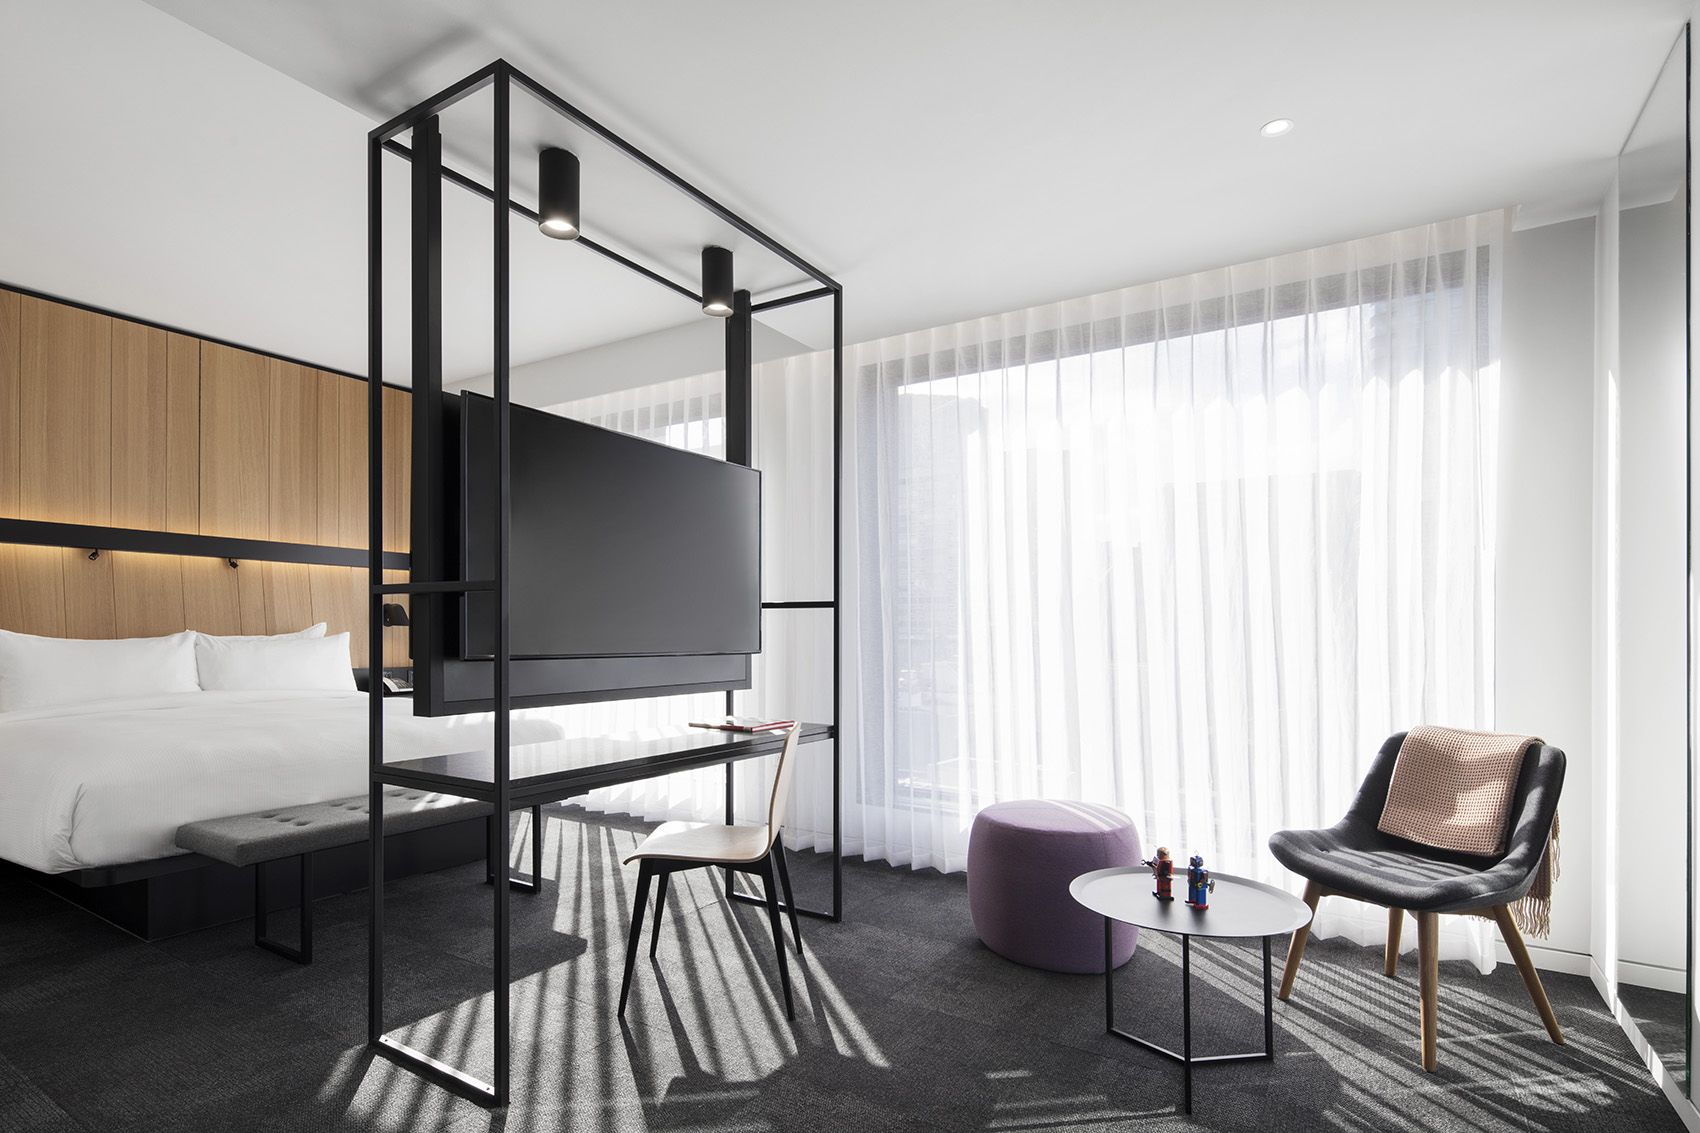  酒店空间设计，让客人具备高品质的空间享受感